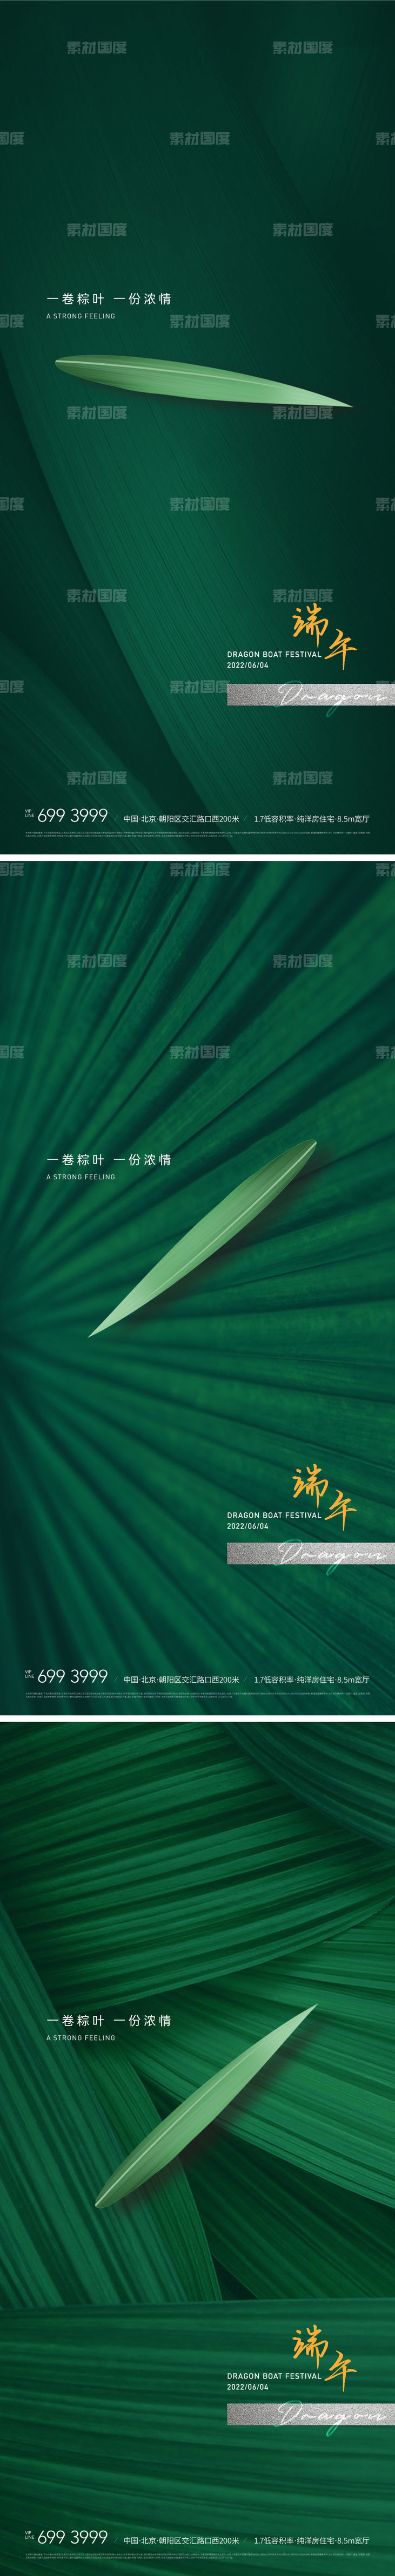 端午节极简风格绿色粽子叶海报